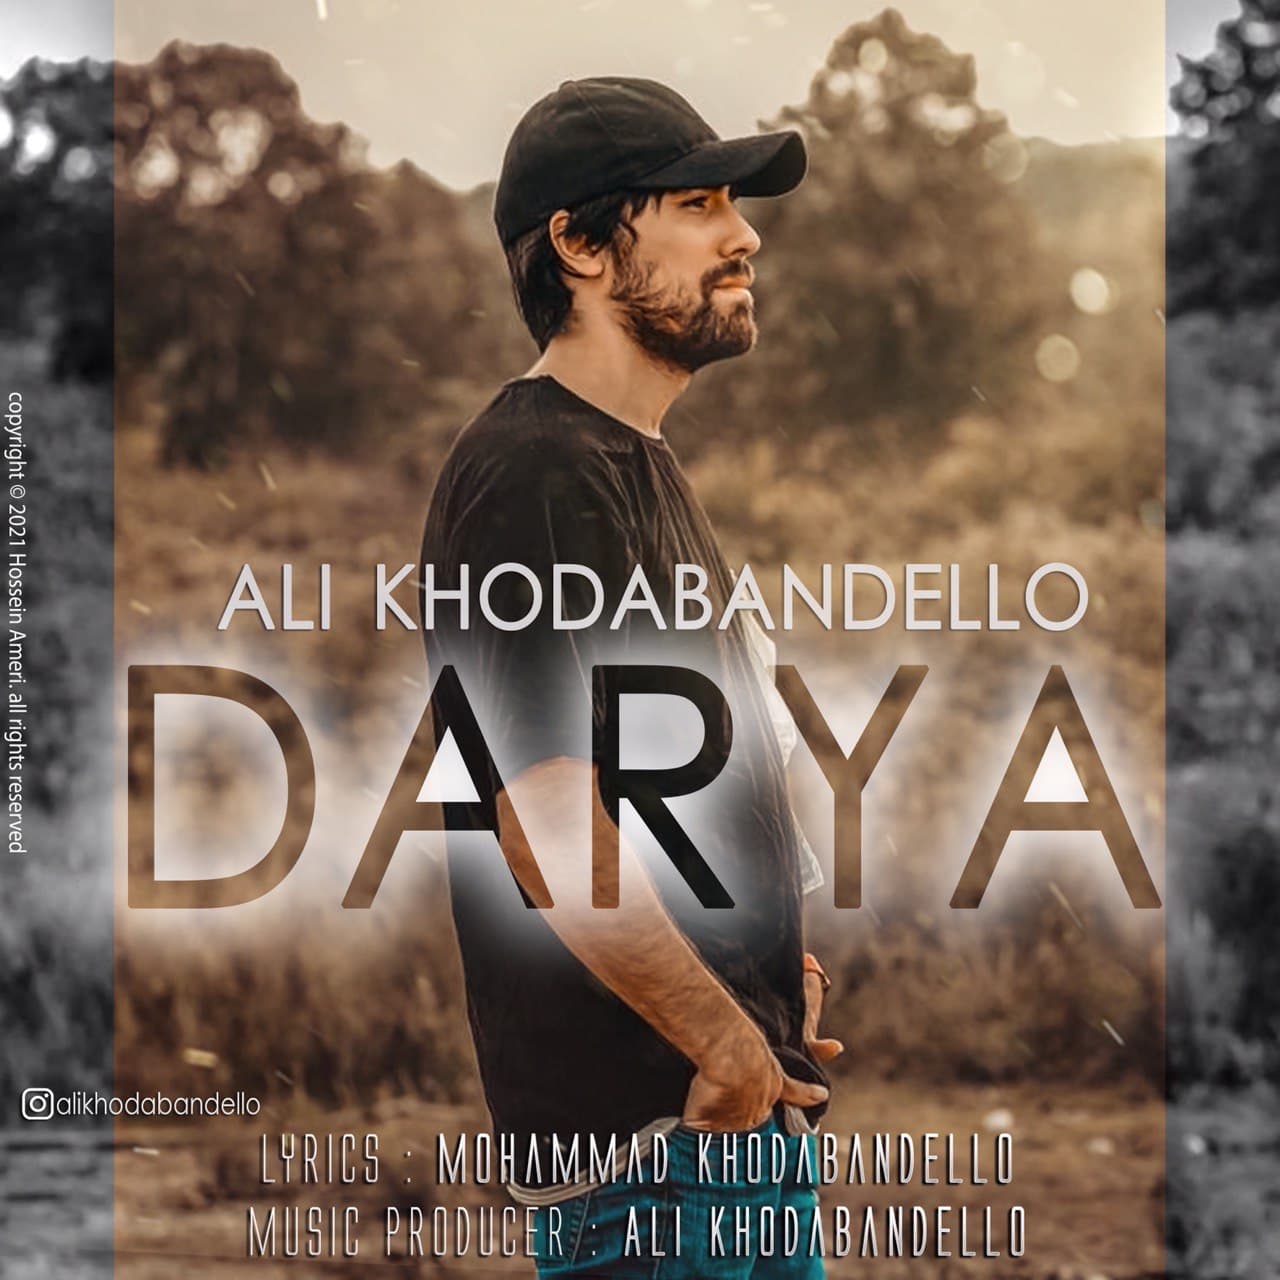  دانلود آهنگ جدید علی خدابنده لو - دریا | Download New Music By Ali Khodabandello - Darya